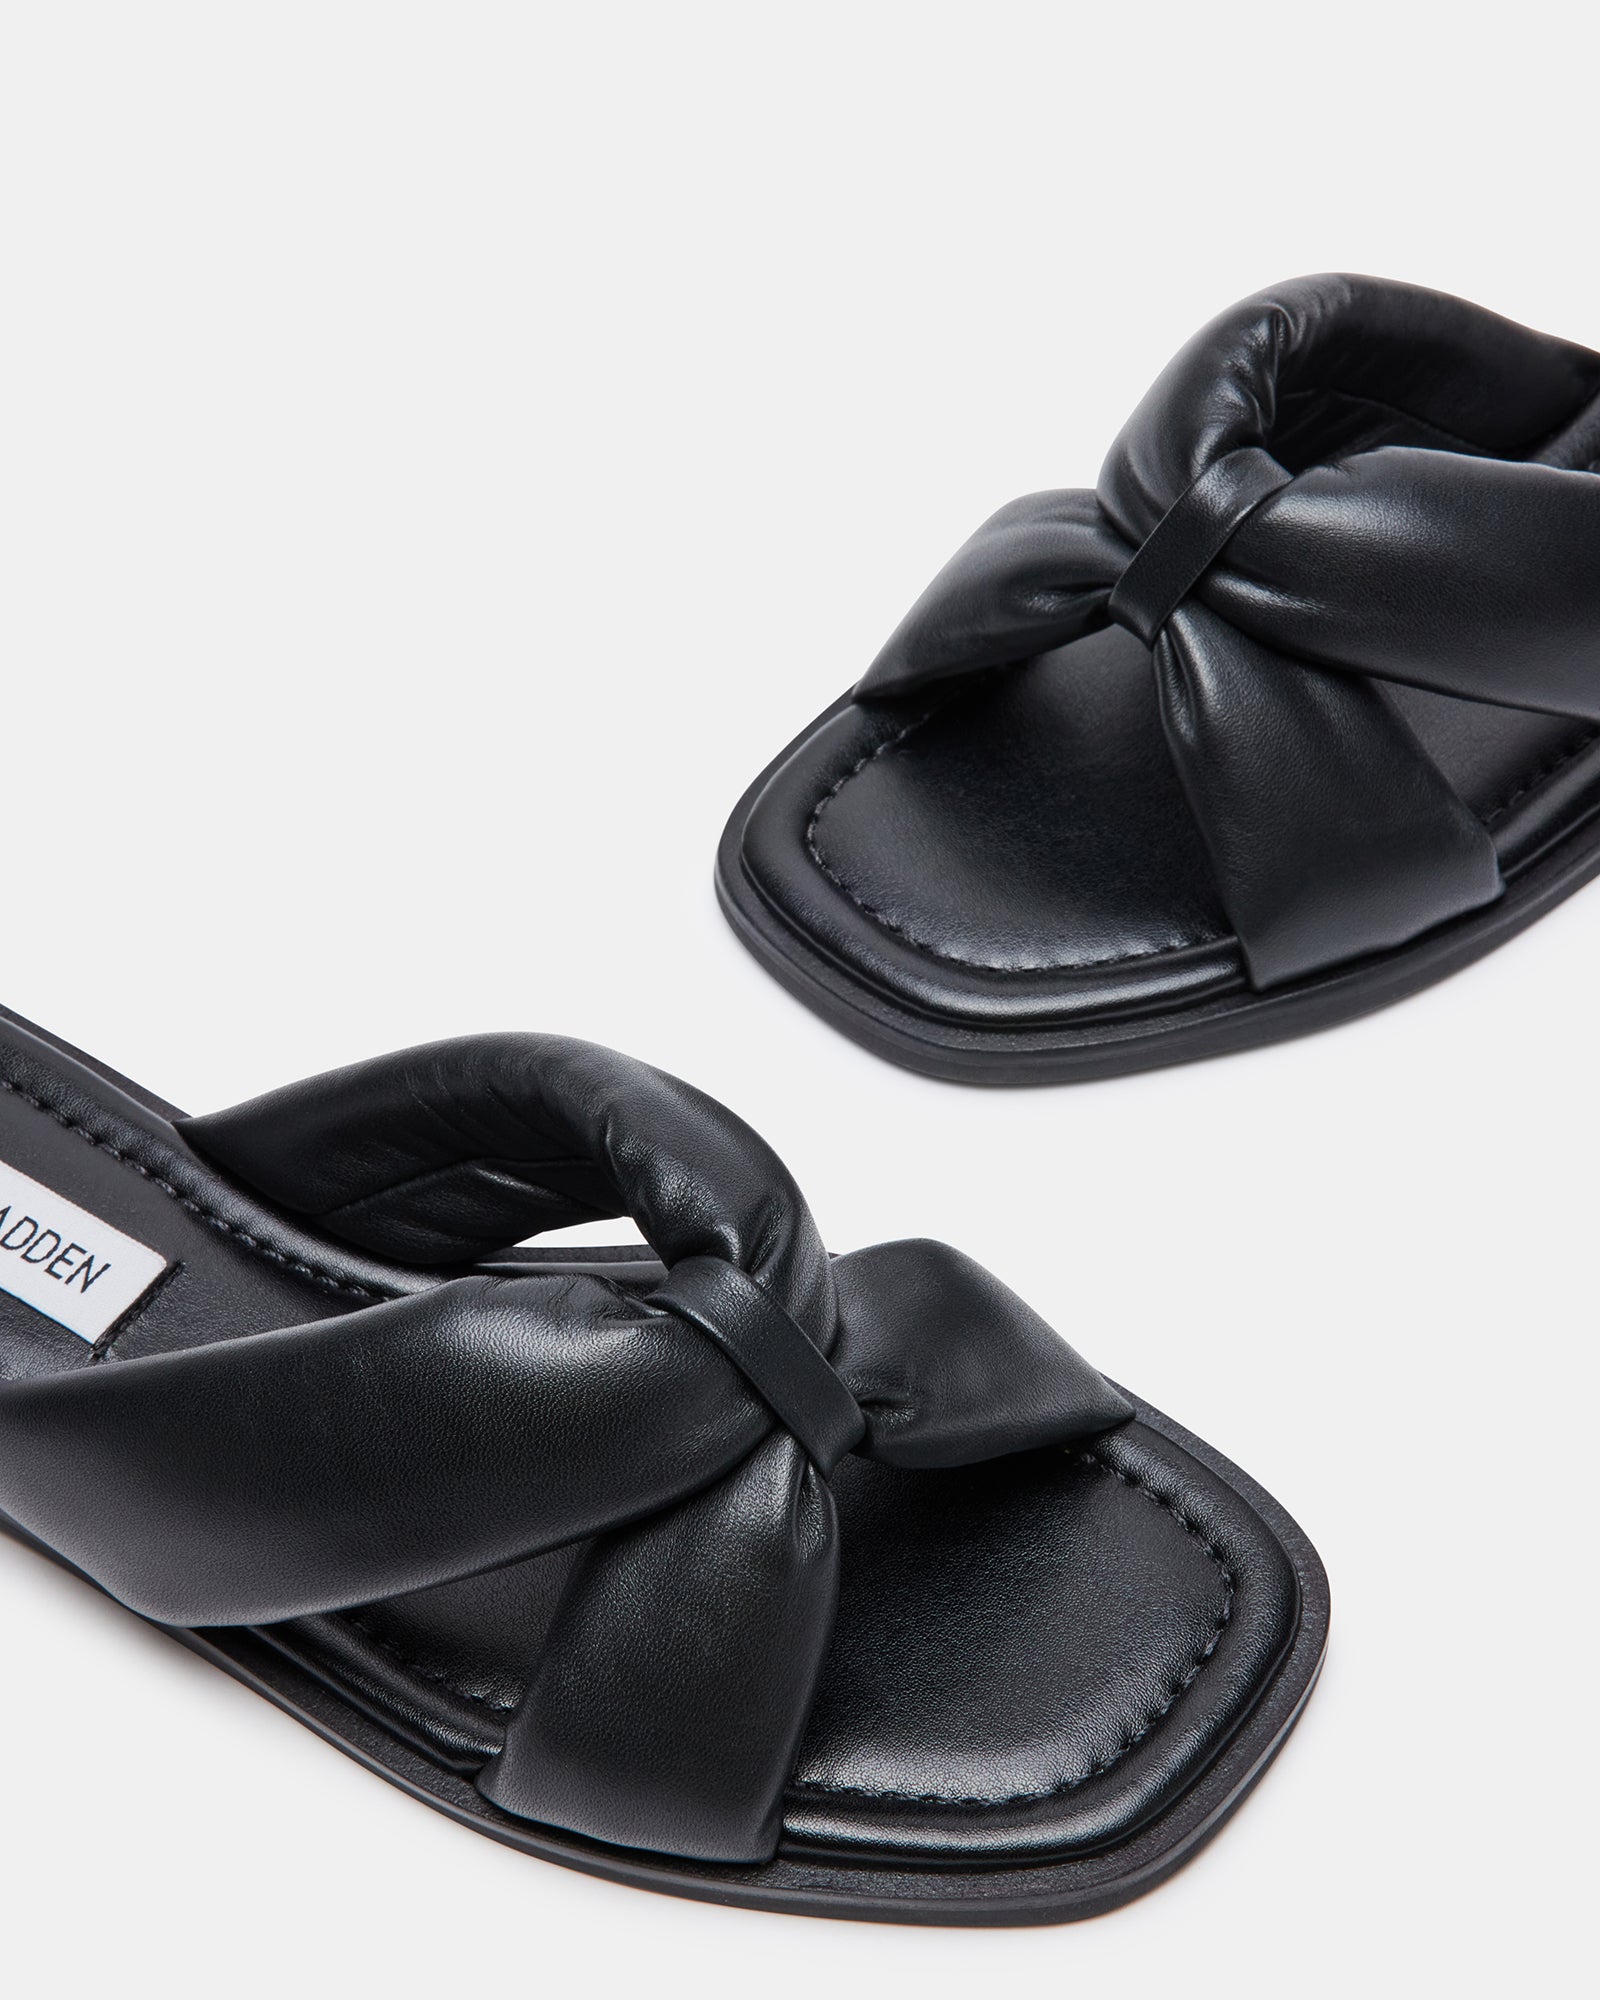 AVIANNA Black Leather Slide Sandal | Women's Sandals – Steve Madden